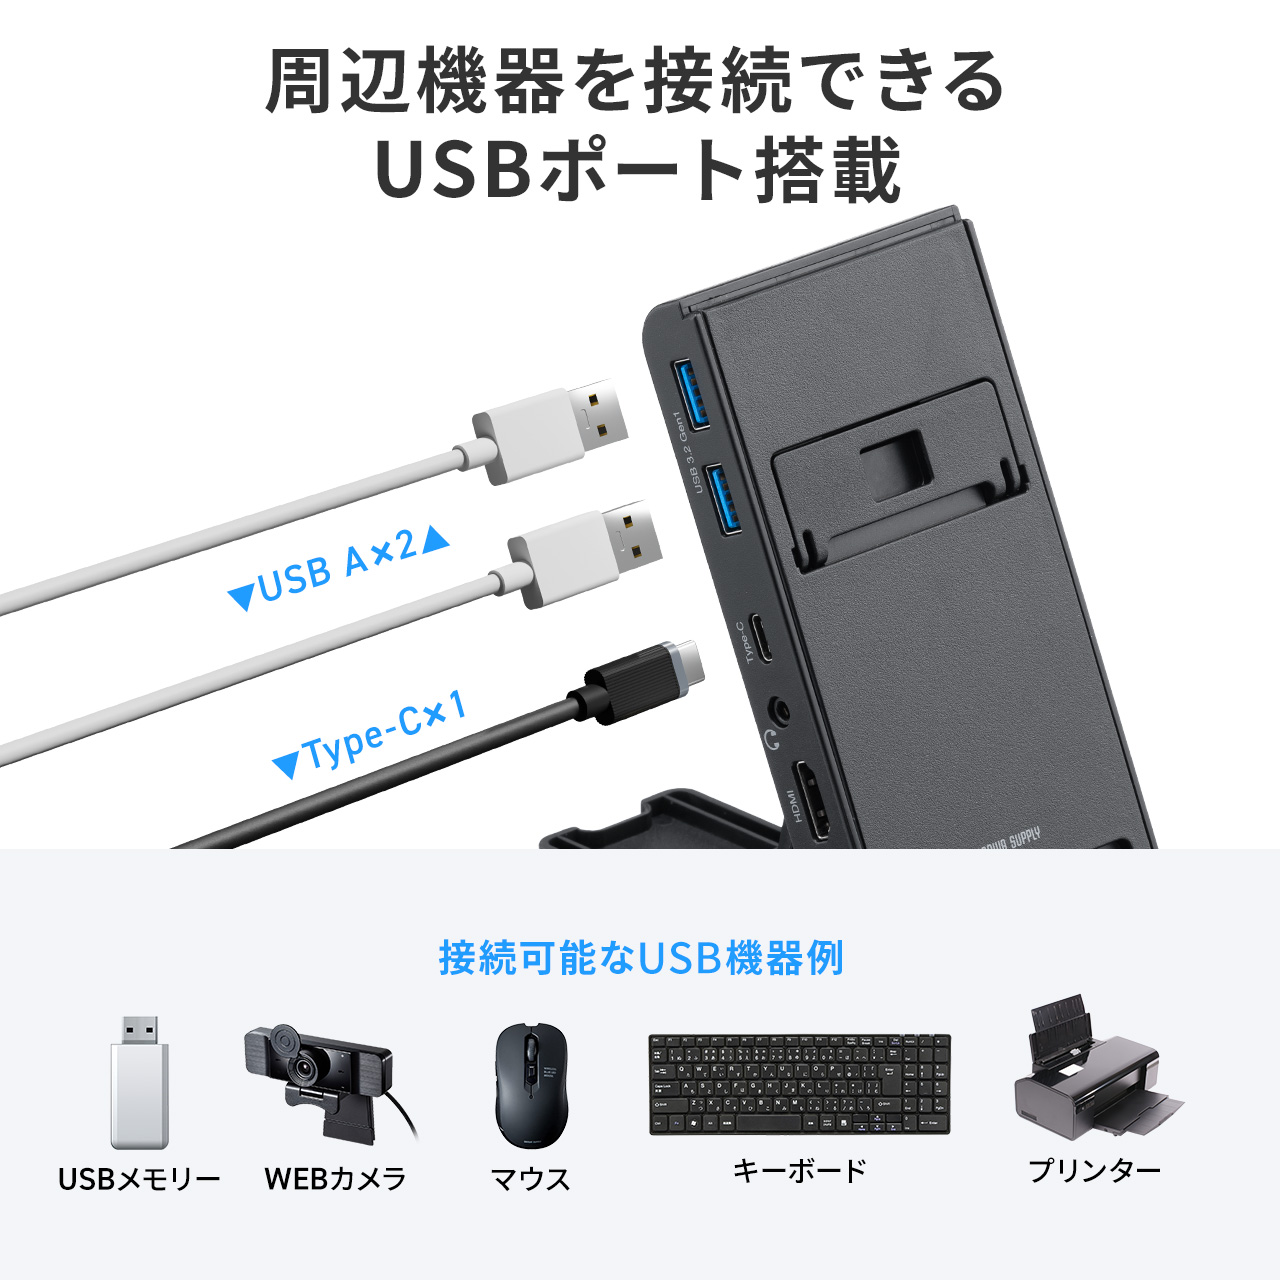 ドッキングステーション HDMI 4K Type-C コンパクト スタンド スマホ スマートフォン タブレット Switch対応 USB 増設 ハブ 変換 充電 400-HUBC14BK